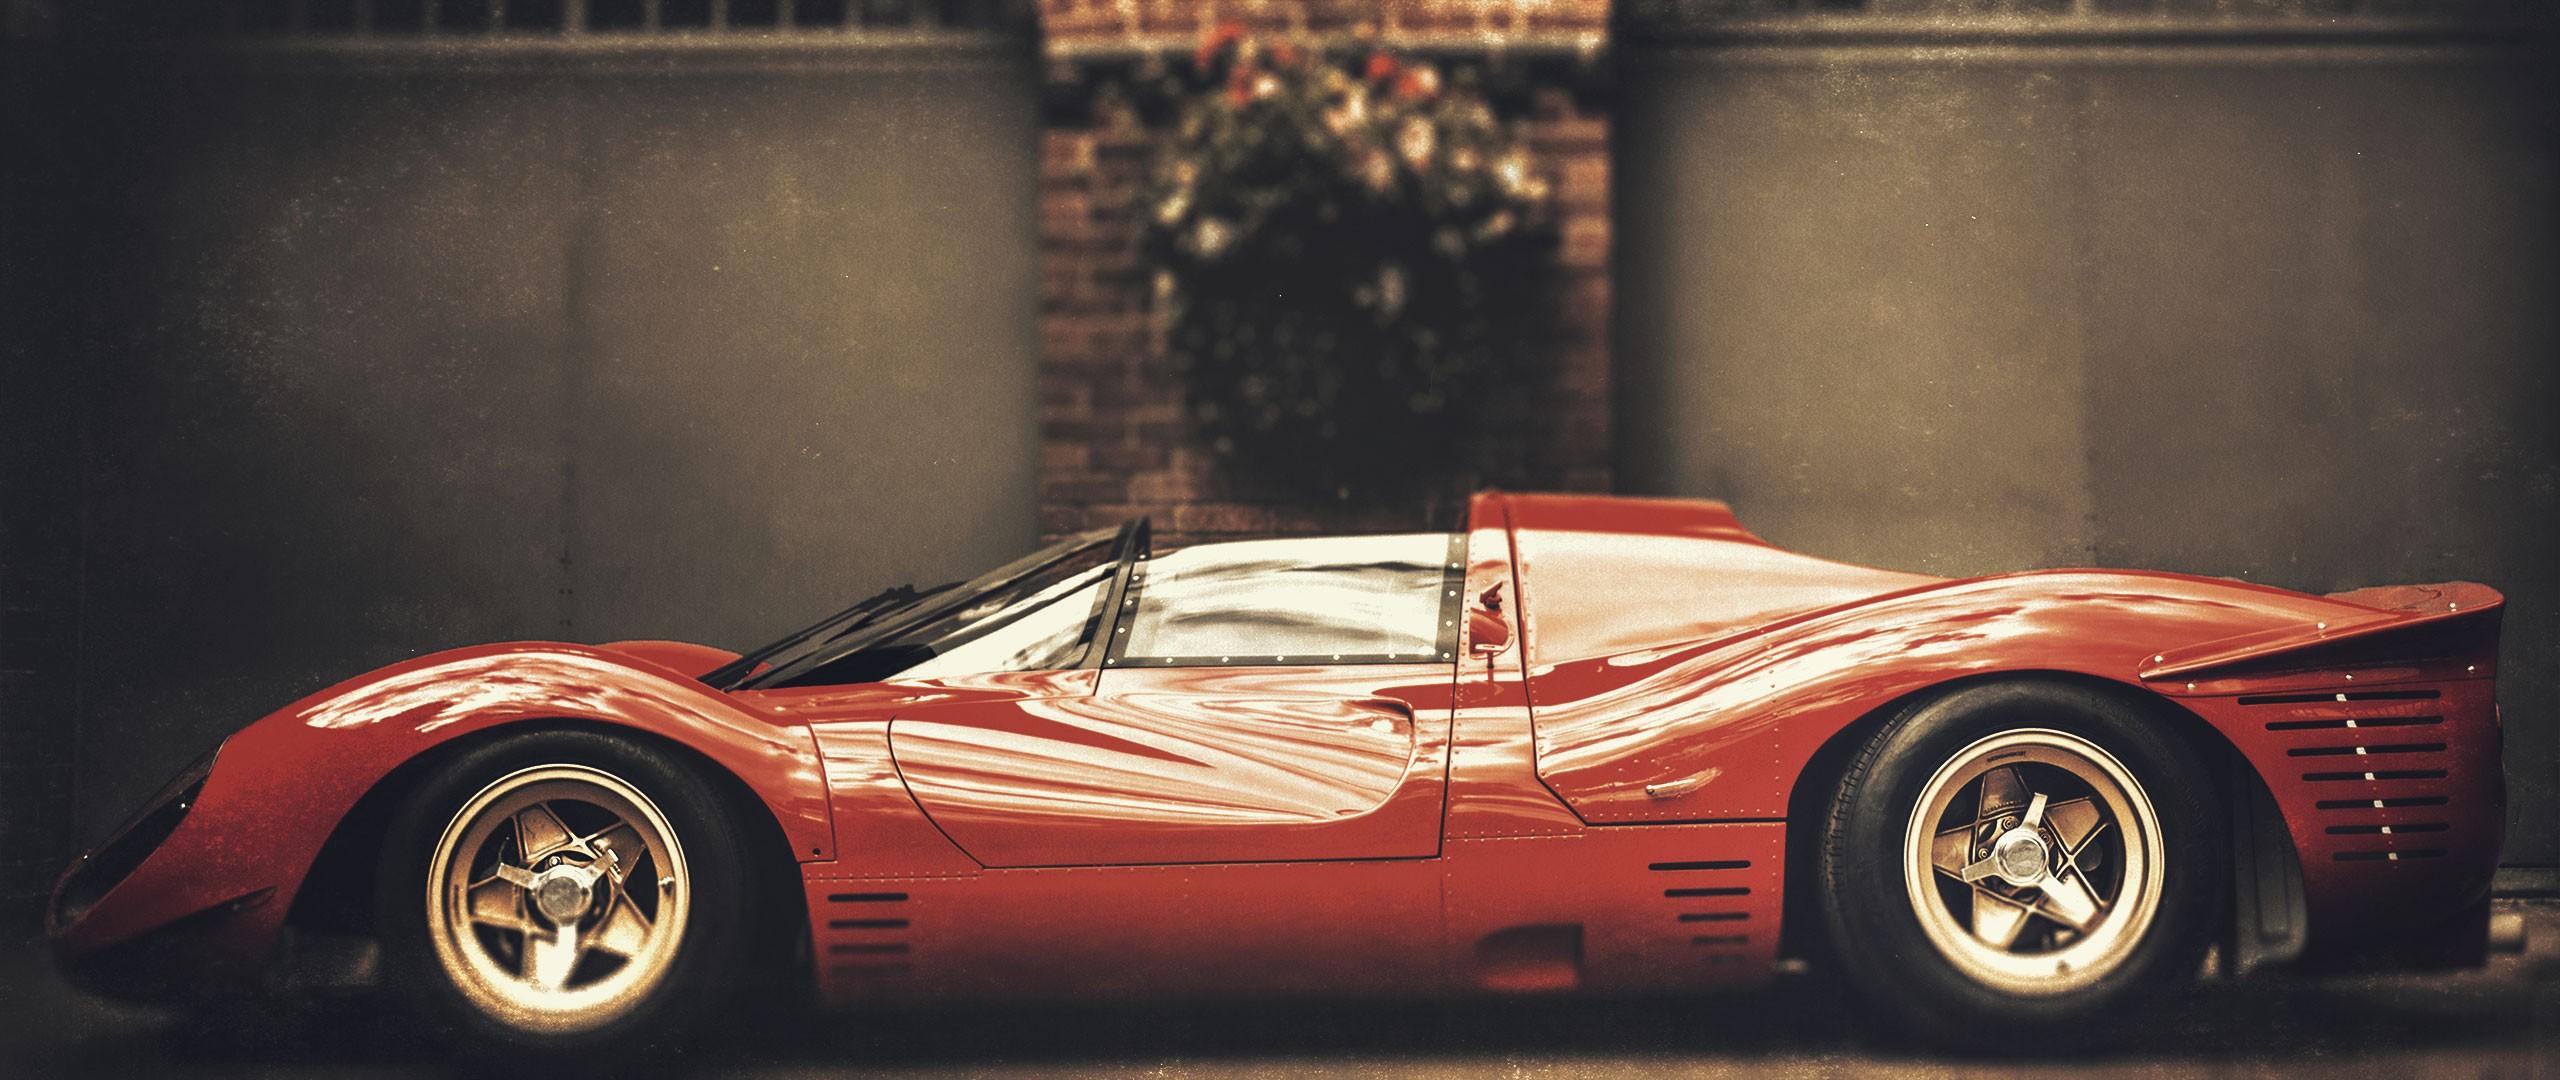 Ferrari, Vintage Car Wallpaper HD / Desktop and Mobile Background